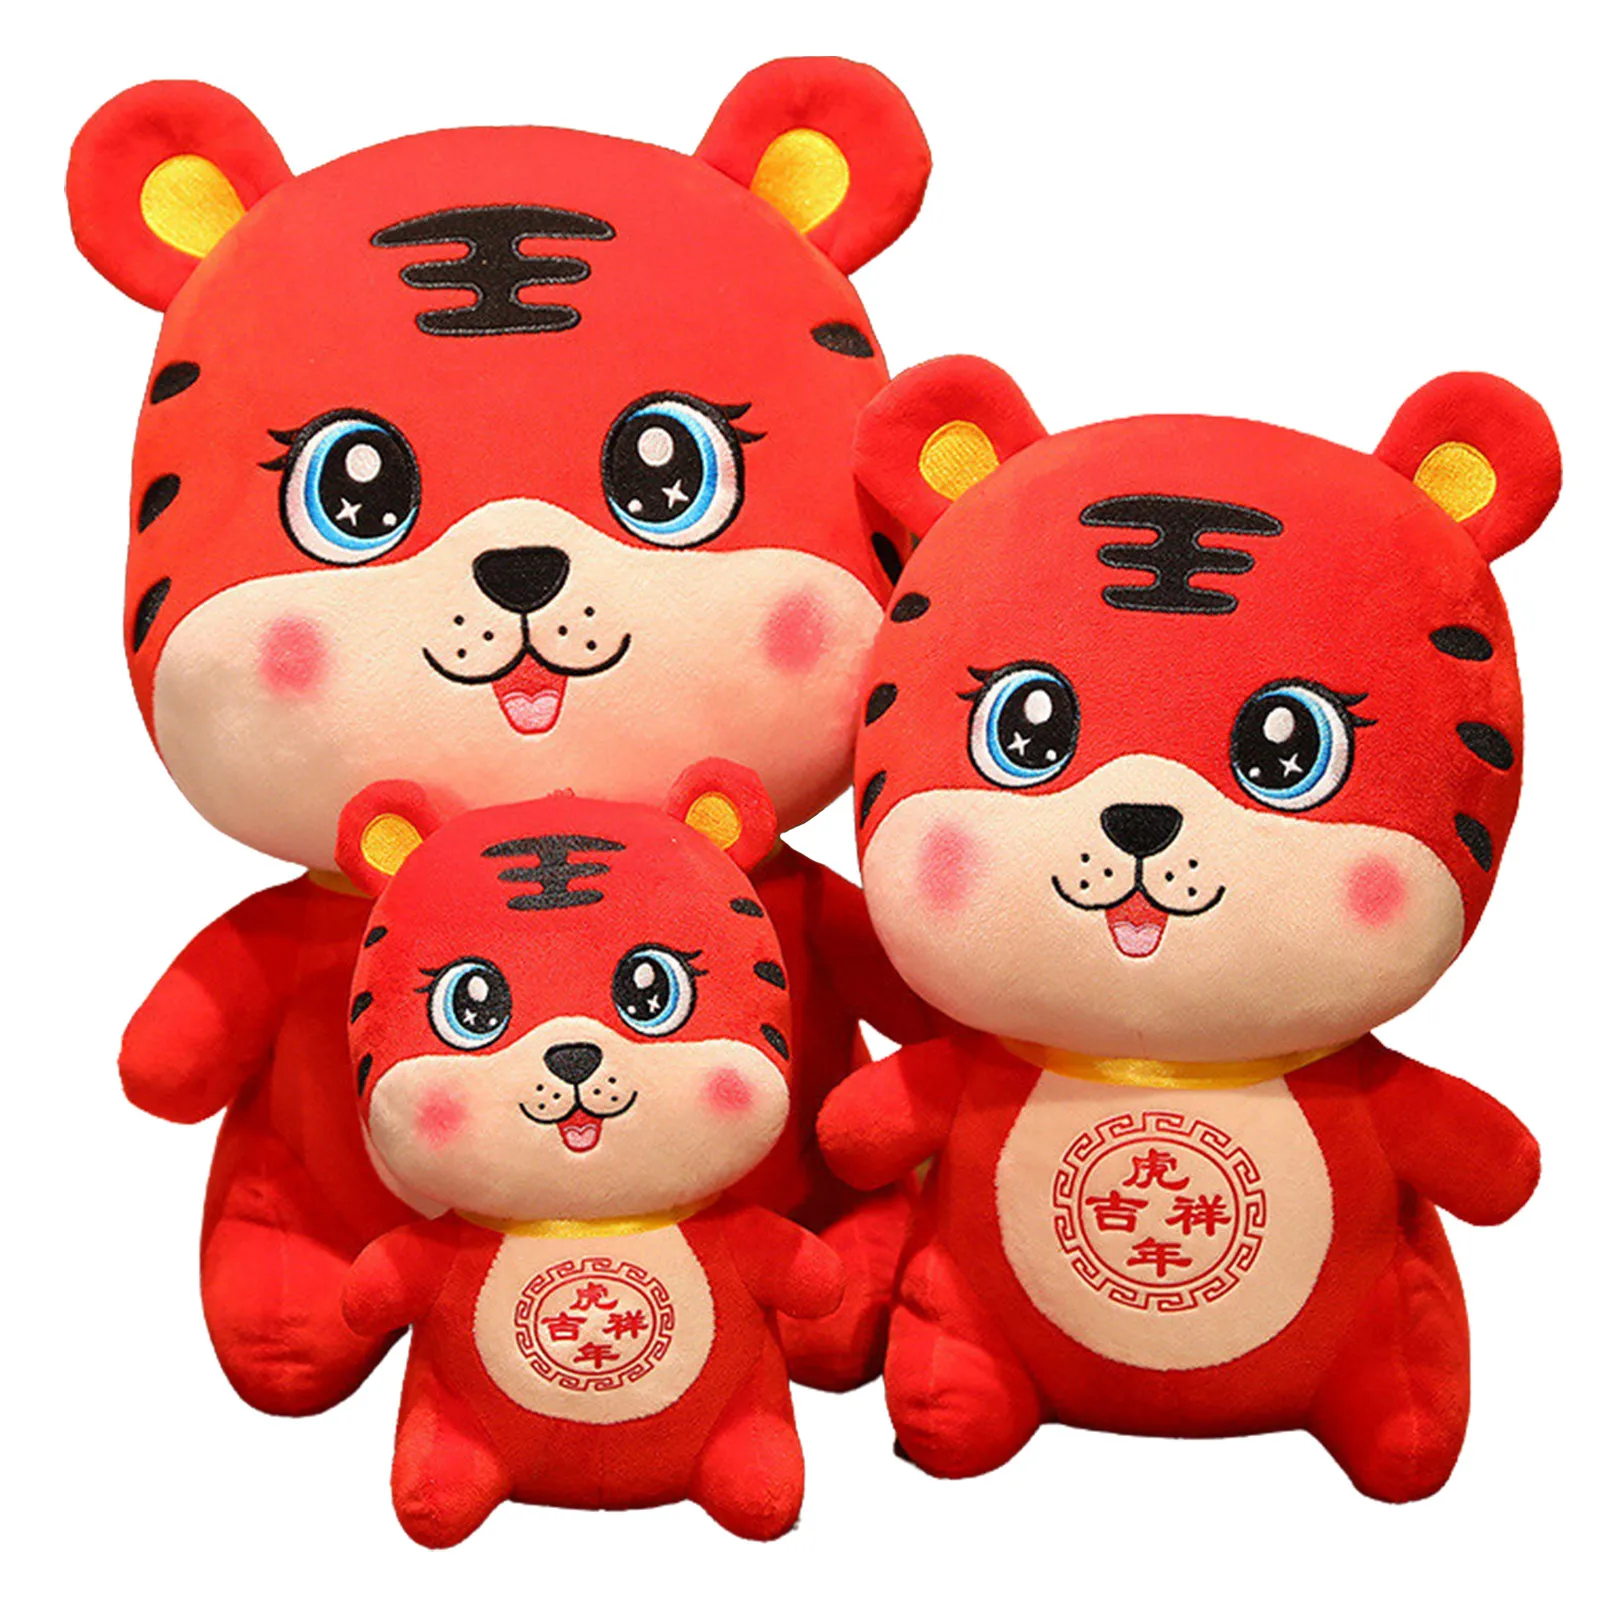 Tiger Maskottchen Dekorationen Puppe-Super Weiche 2022 Chinesische Neue Jahr Zodiac Tiger Plüsch Spielzeug | Nette Tiger Maskottchen Gefüllte puppe